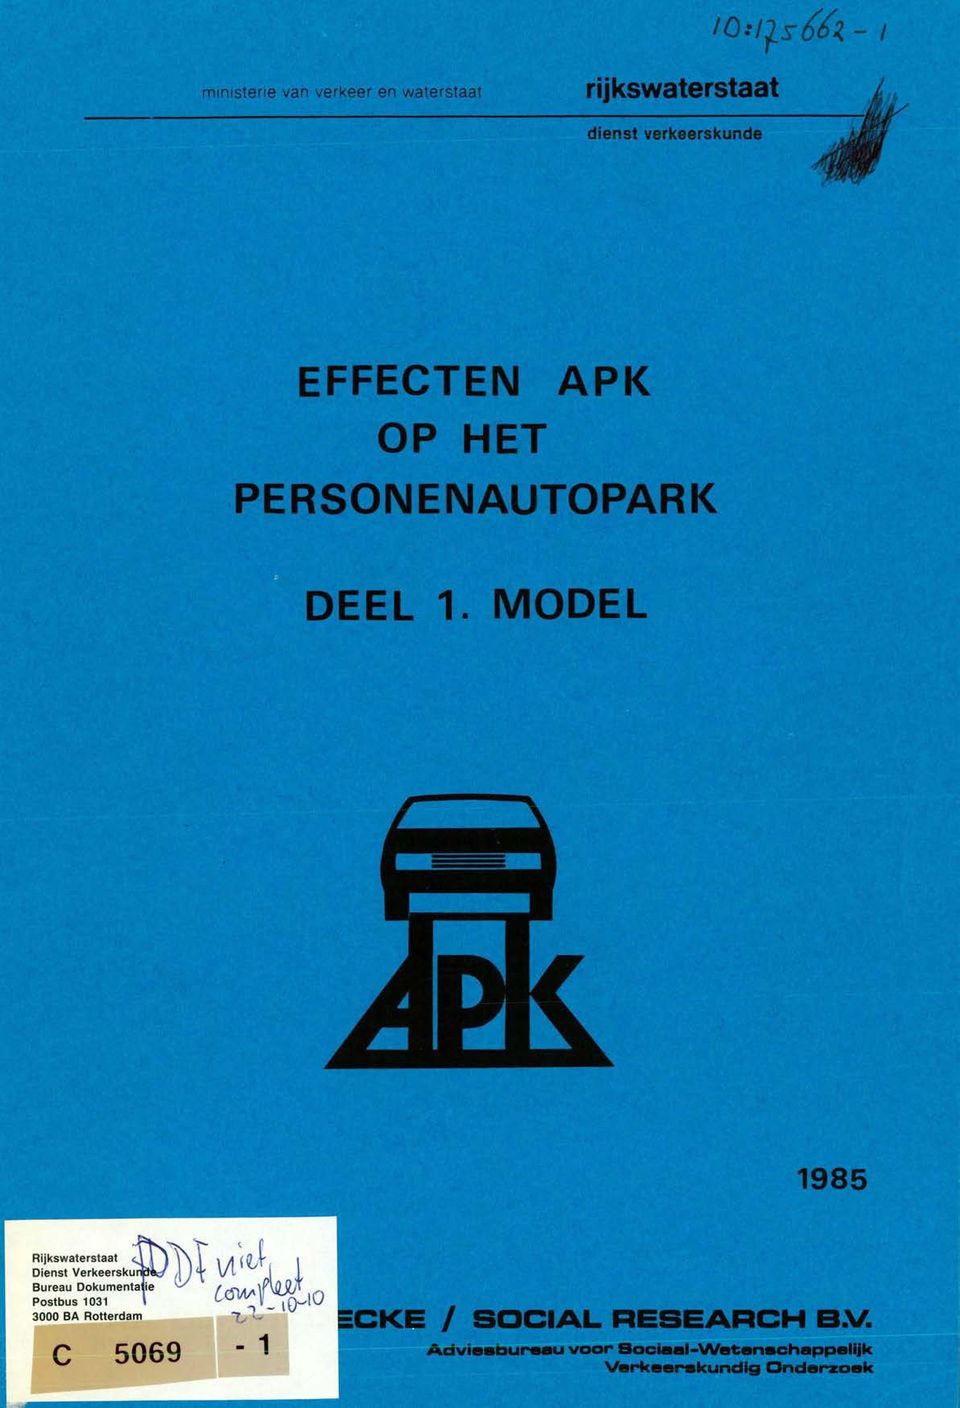 MODEL 1985 Rijkswaterstaat Dienst Verkeersku' Bureau Dokumenta ie )( \J 4 '1(